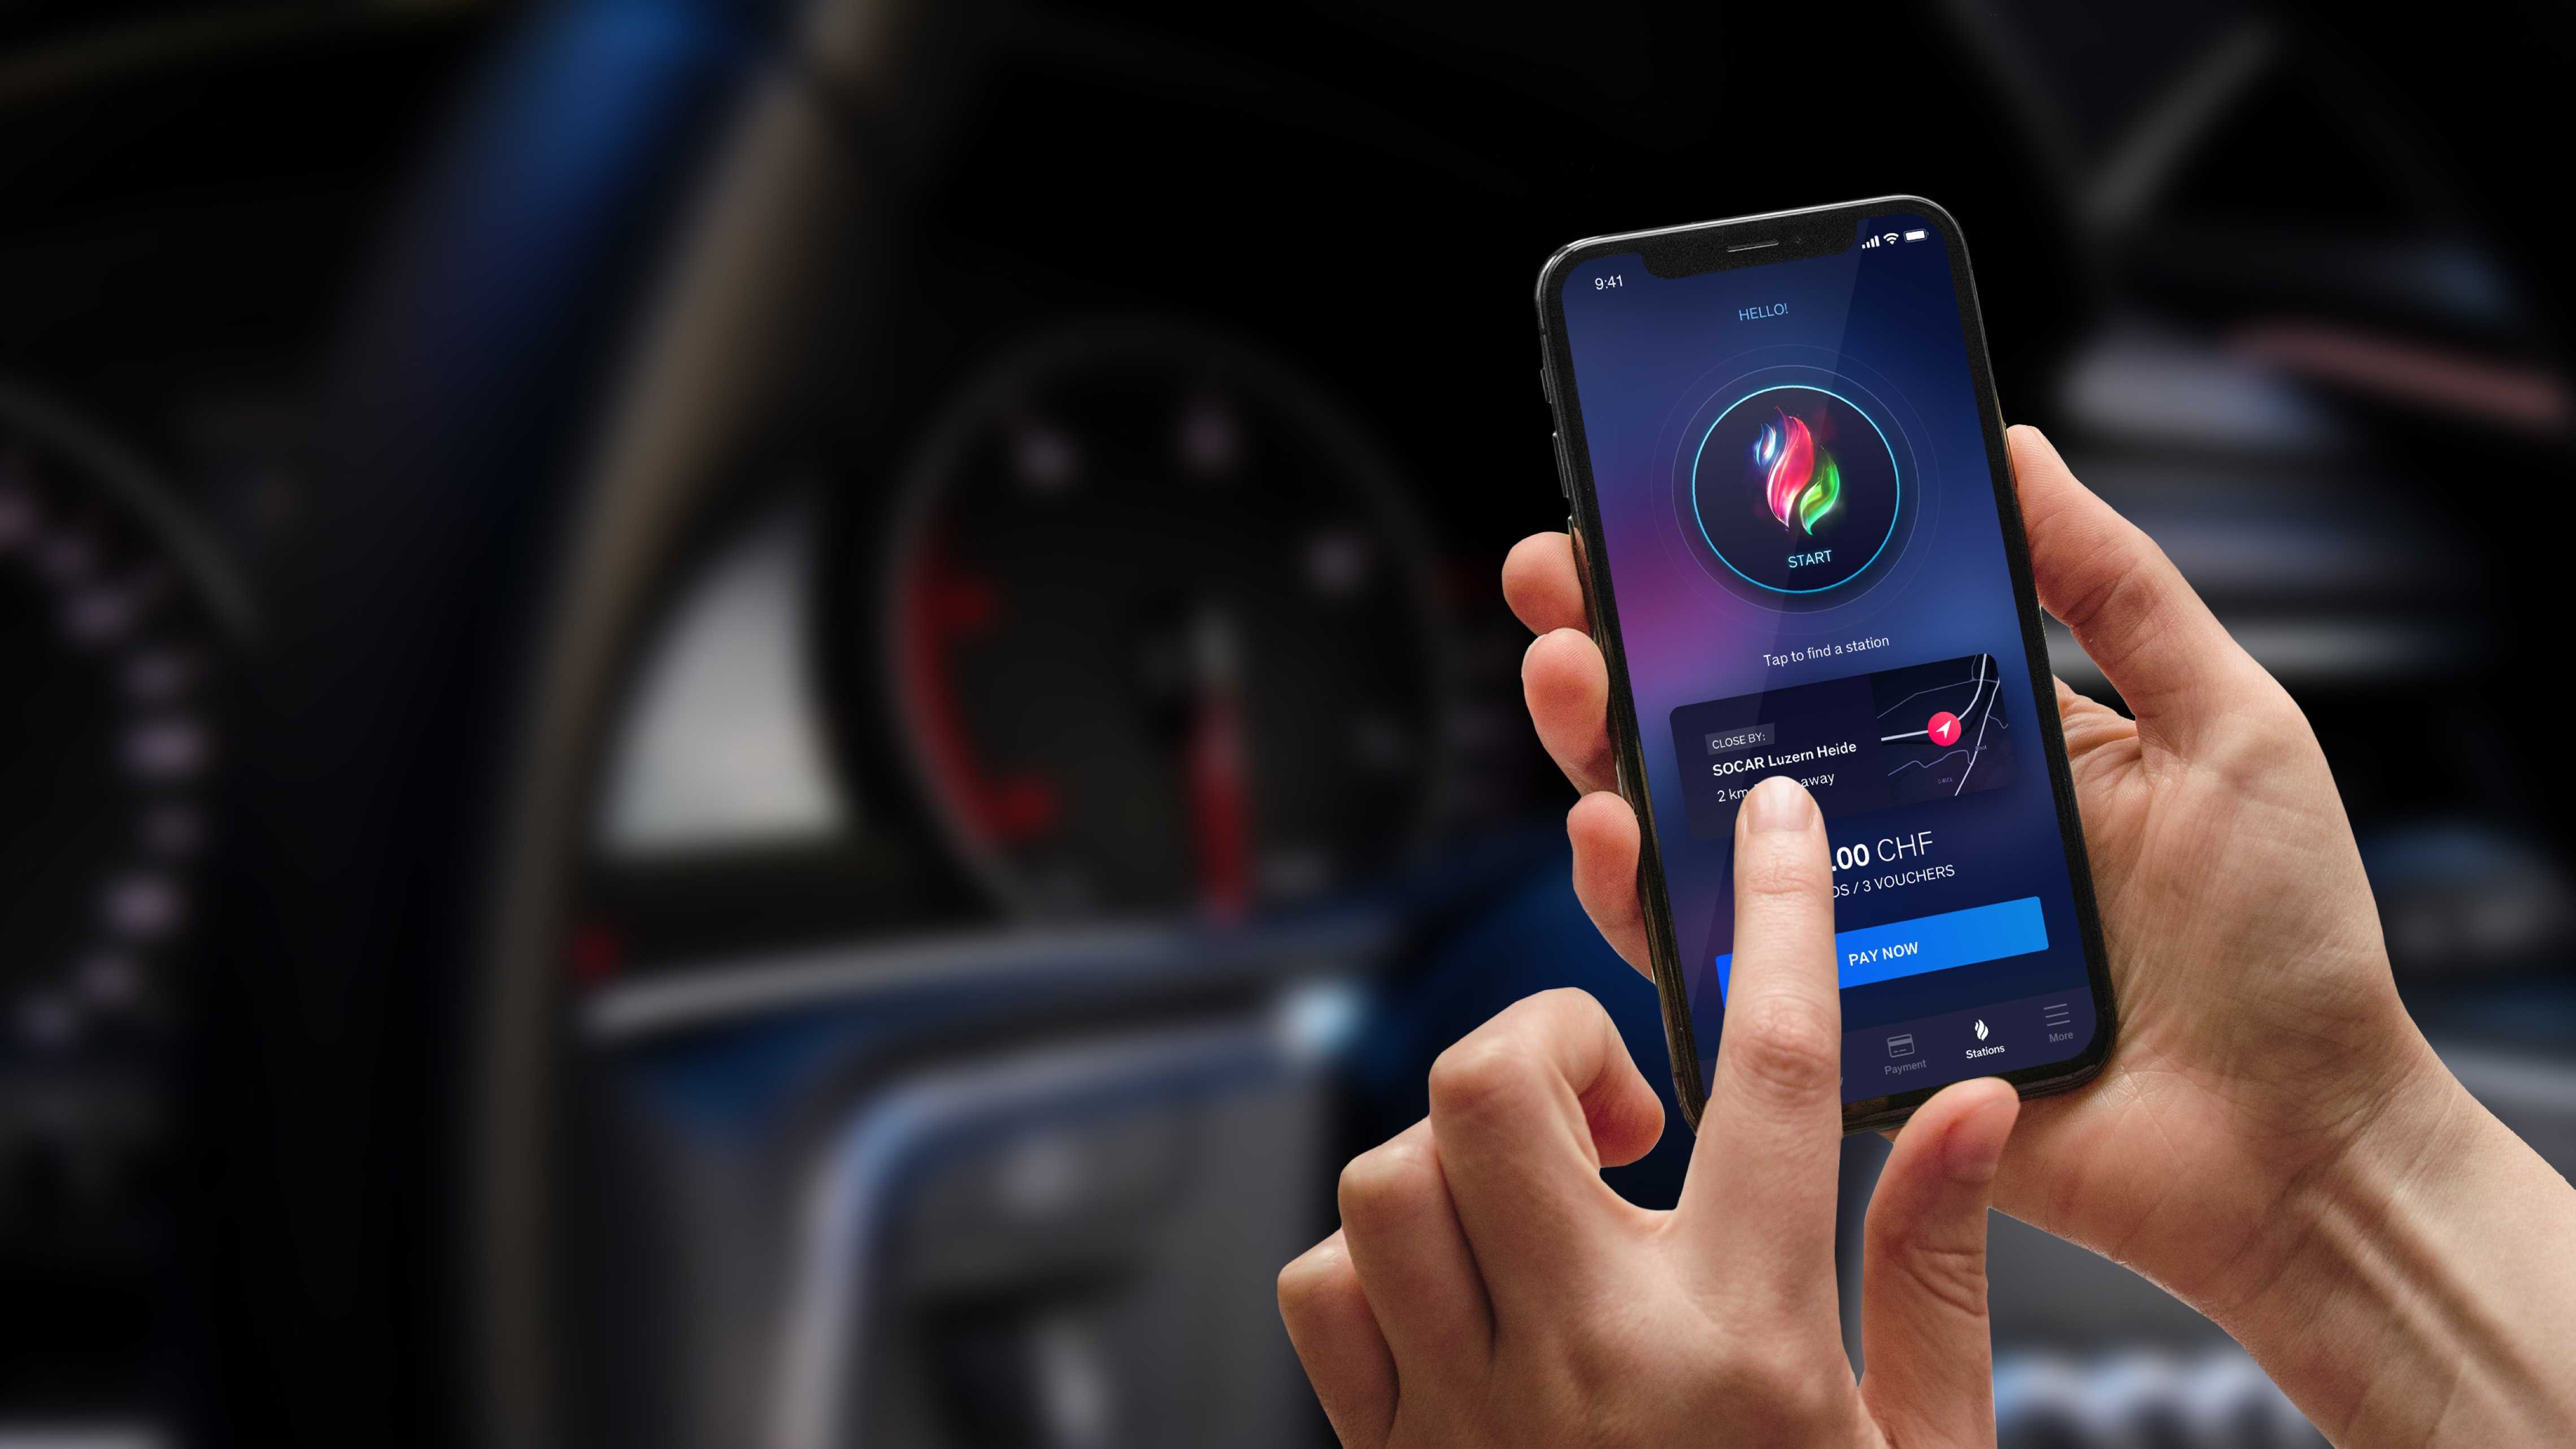 Ontwerp mobiele applicatie gebruikerservaring voor retail benzinestation met auto dashboard op achtergrond